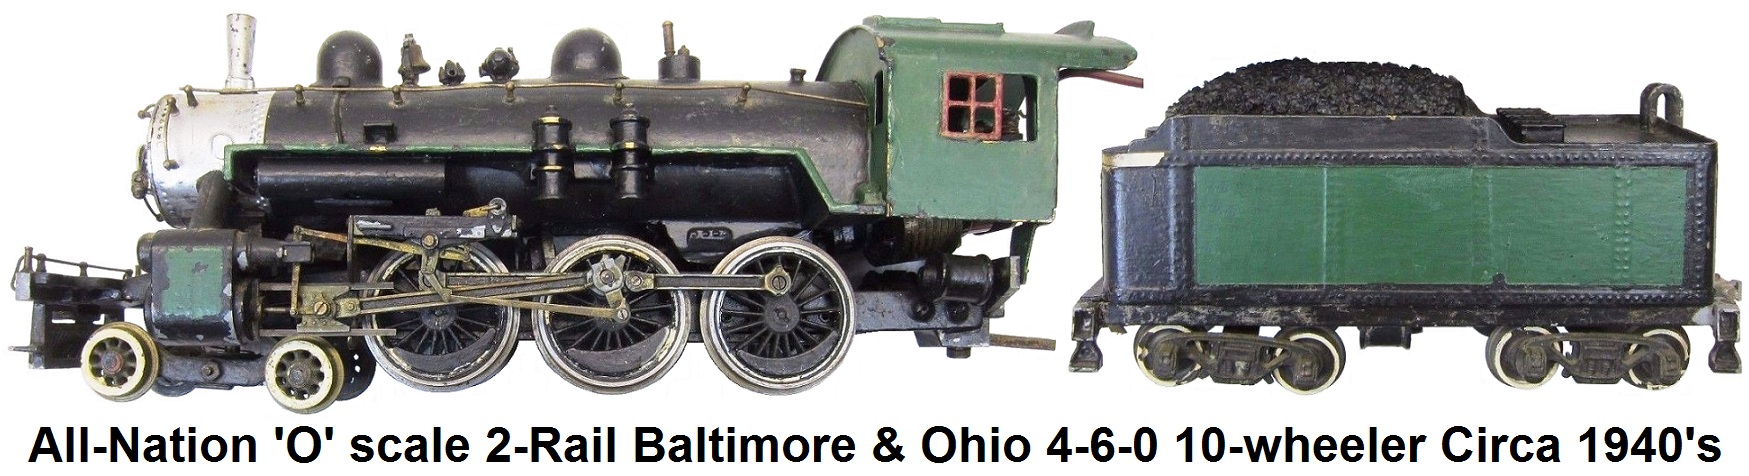 All-Nation O Scale 2-Rail Baltimore & Ohio 4-6-0 Ten Wheeler Steam Locomotive & Tender, Circa 1940's